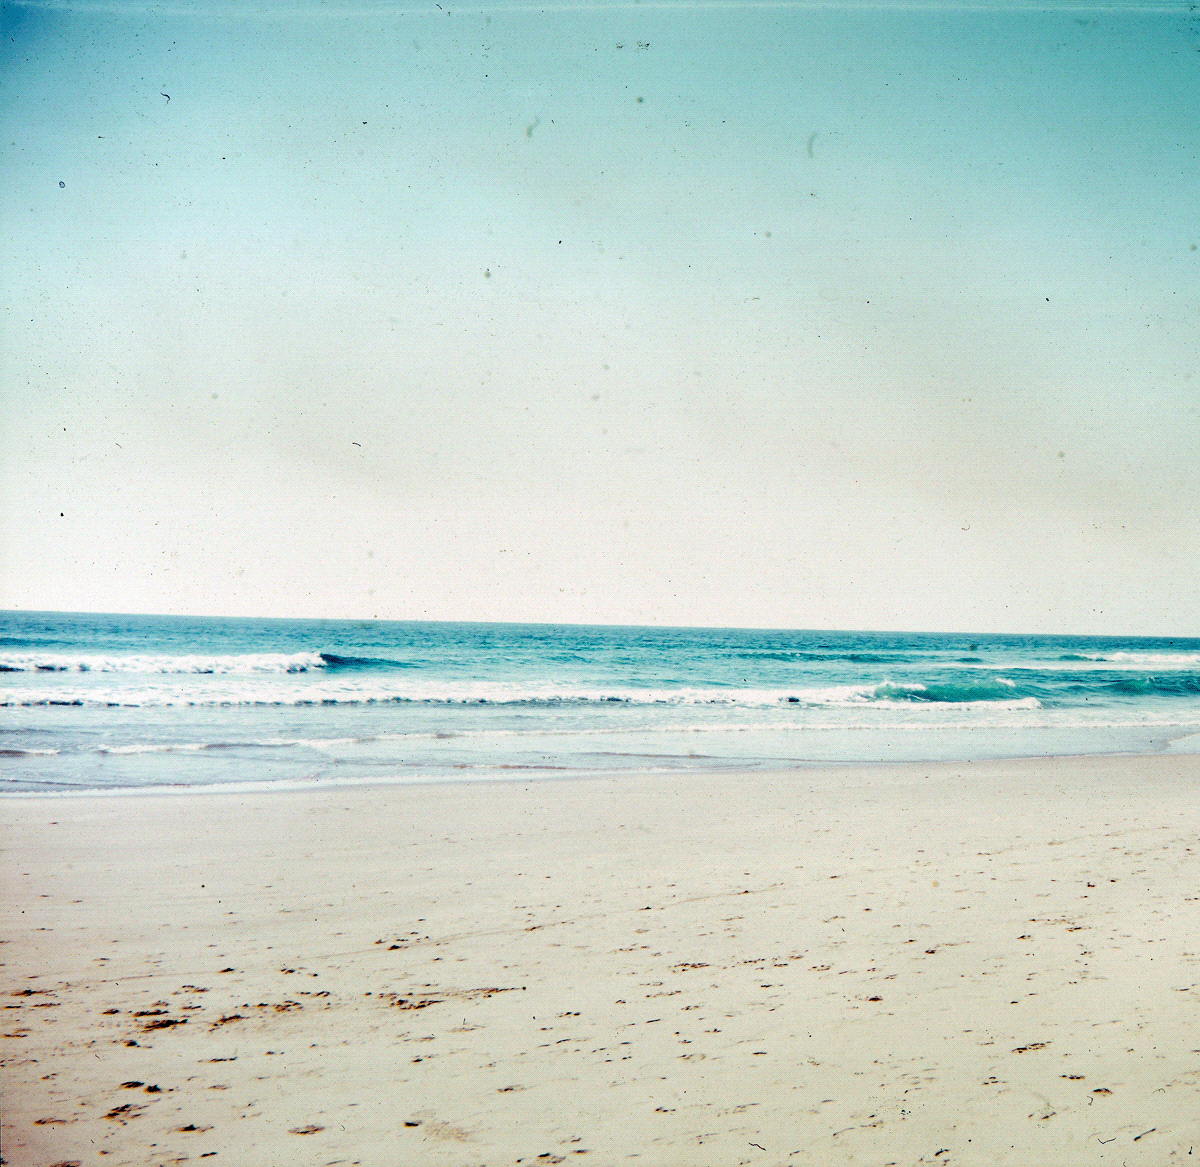 analog photography film photography sunshine coast Australia